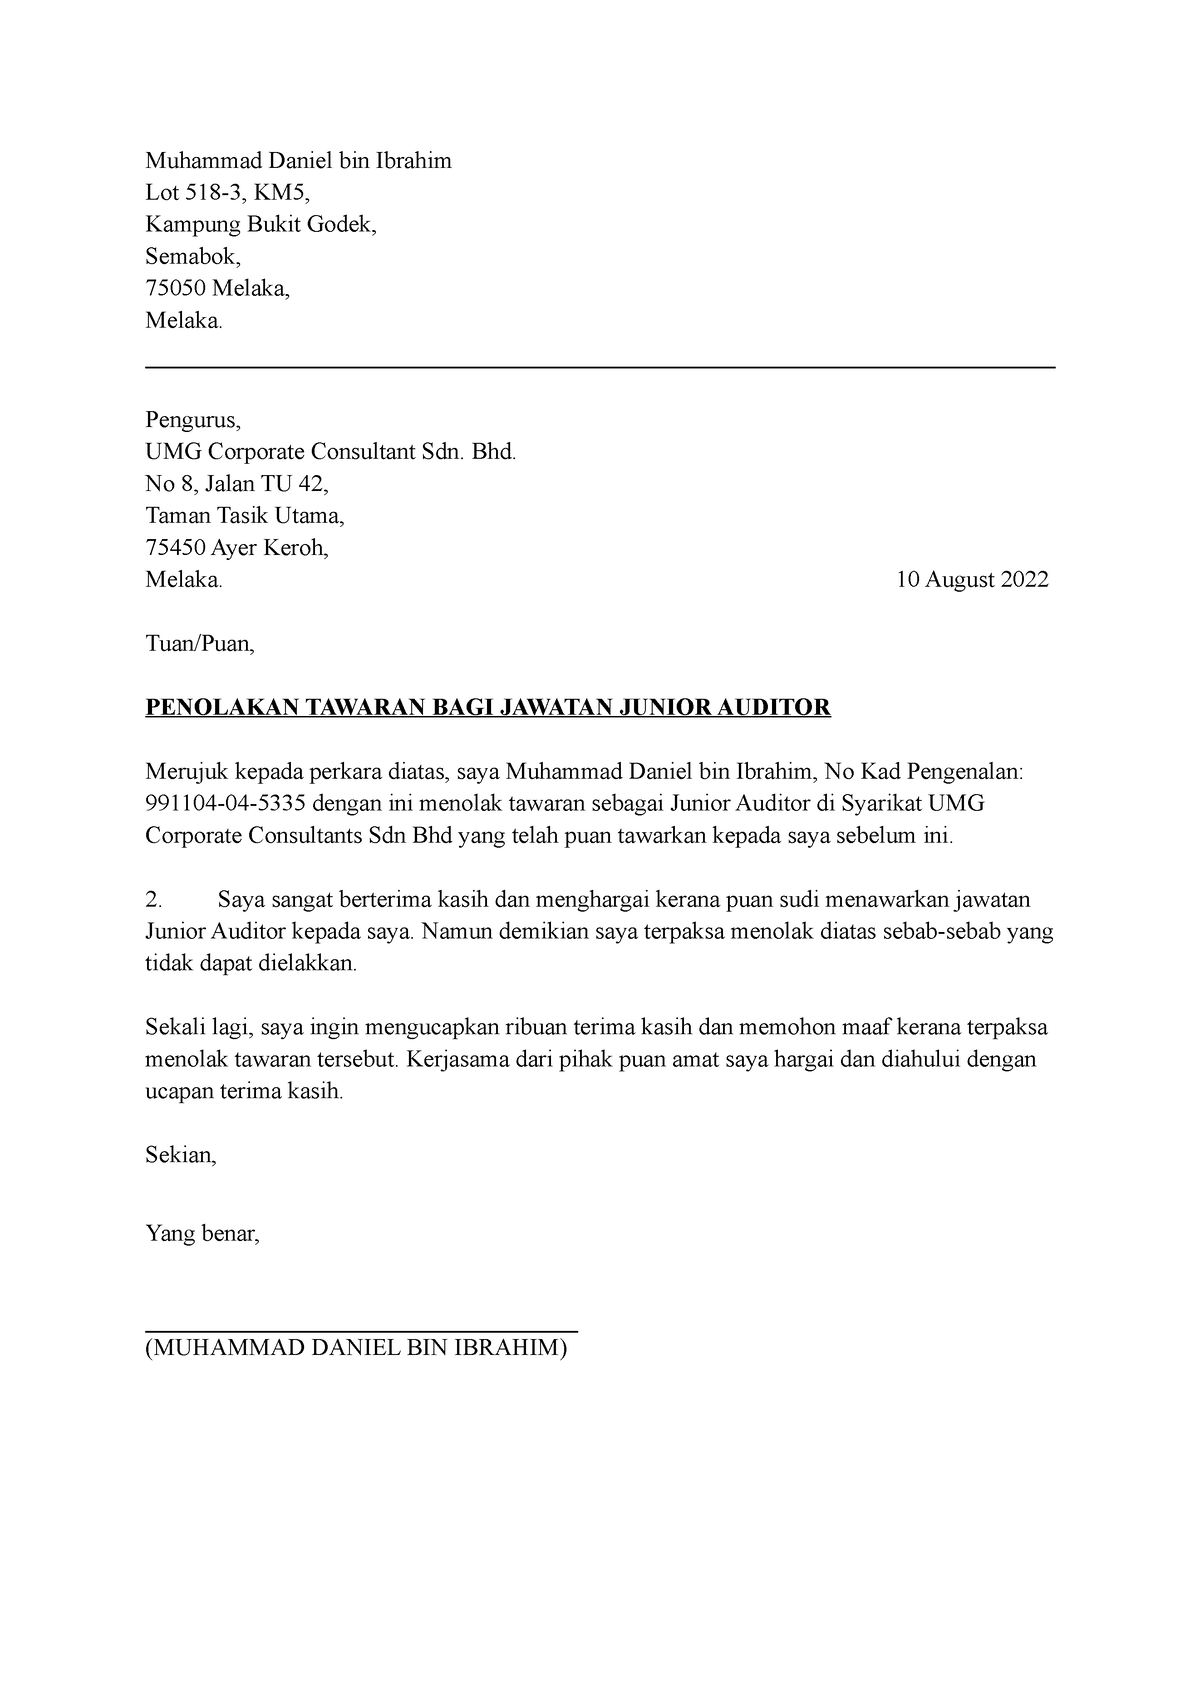 Surat Penolakan Tawaran Muhammad Daniel Bin Ibrahim Lot KM Kampung Bukit Godek